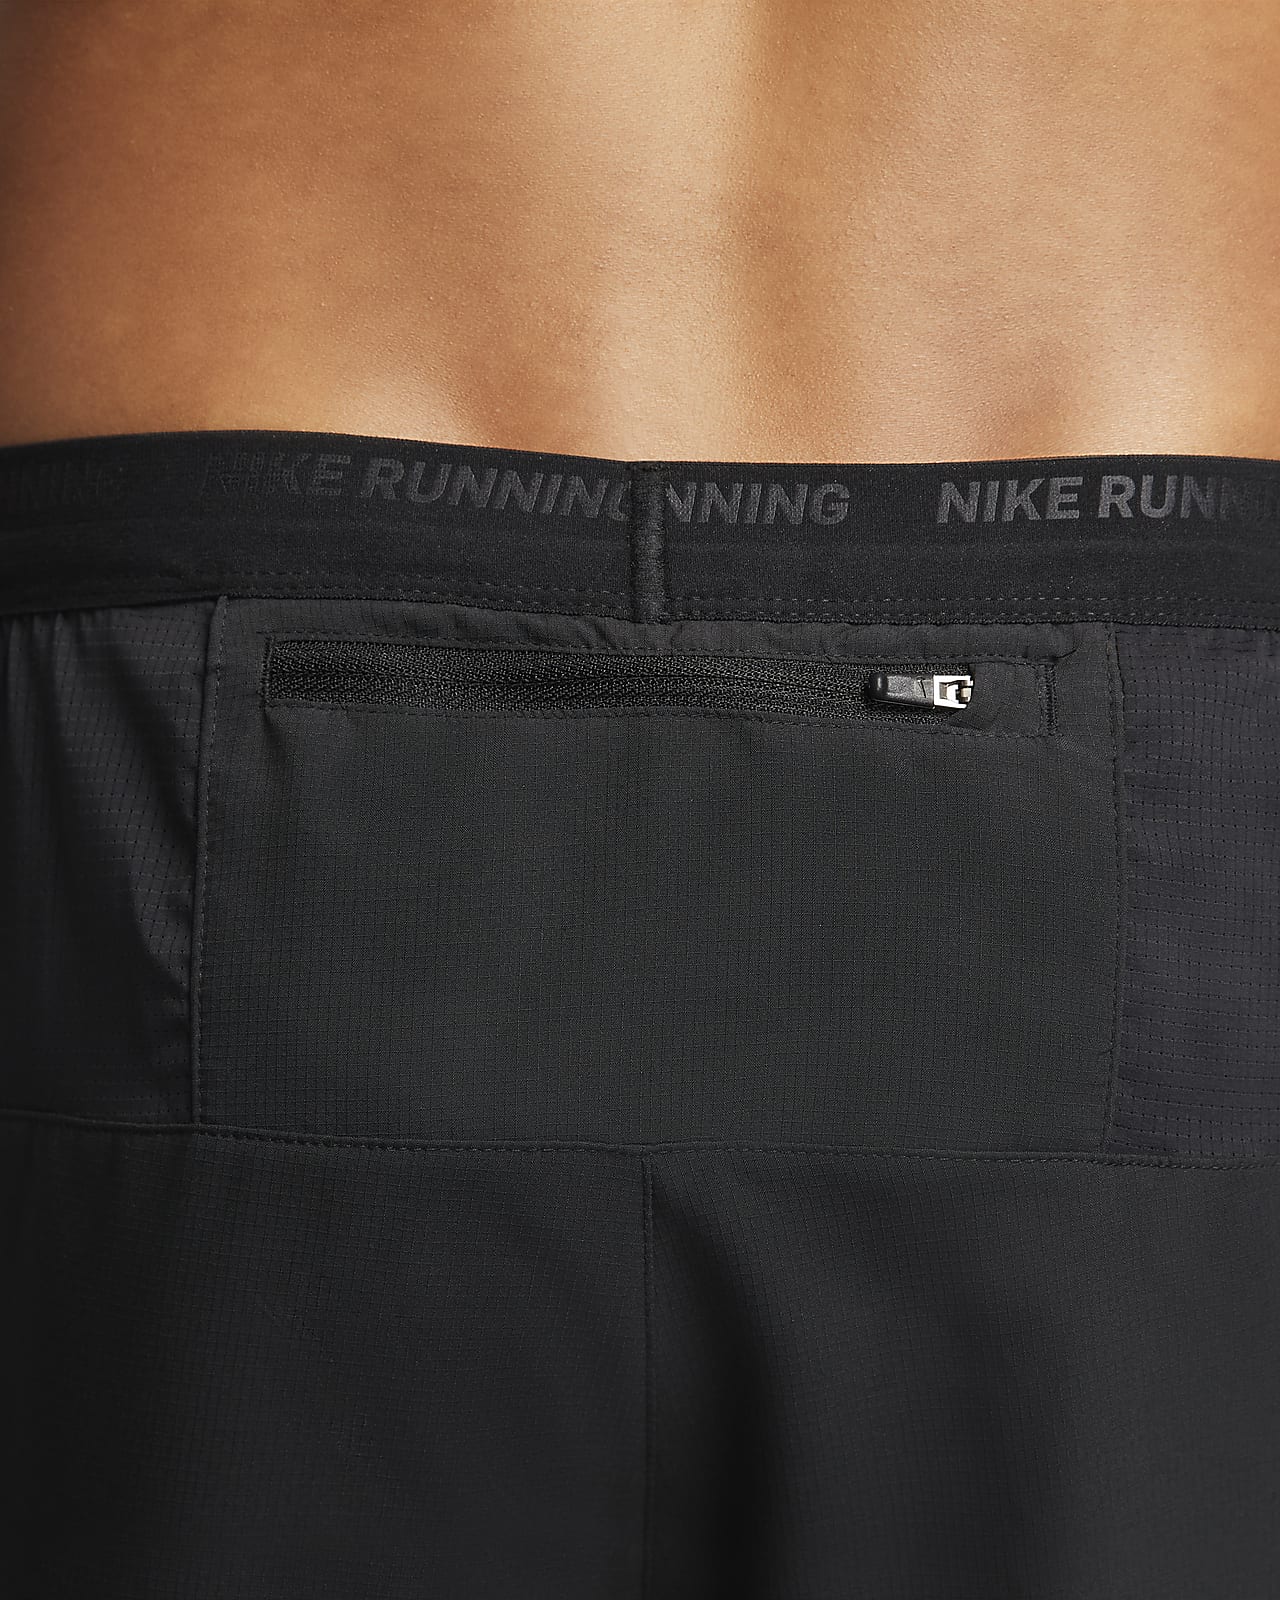 Short running Nike Stride homme - Coloris gris, bandes réfléchissantes